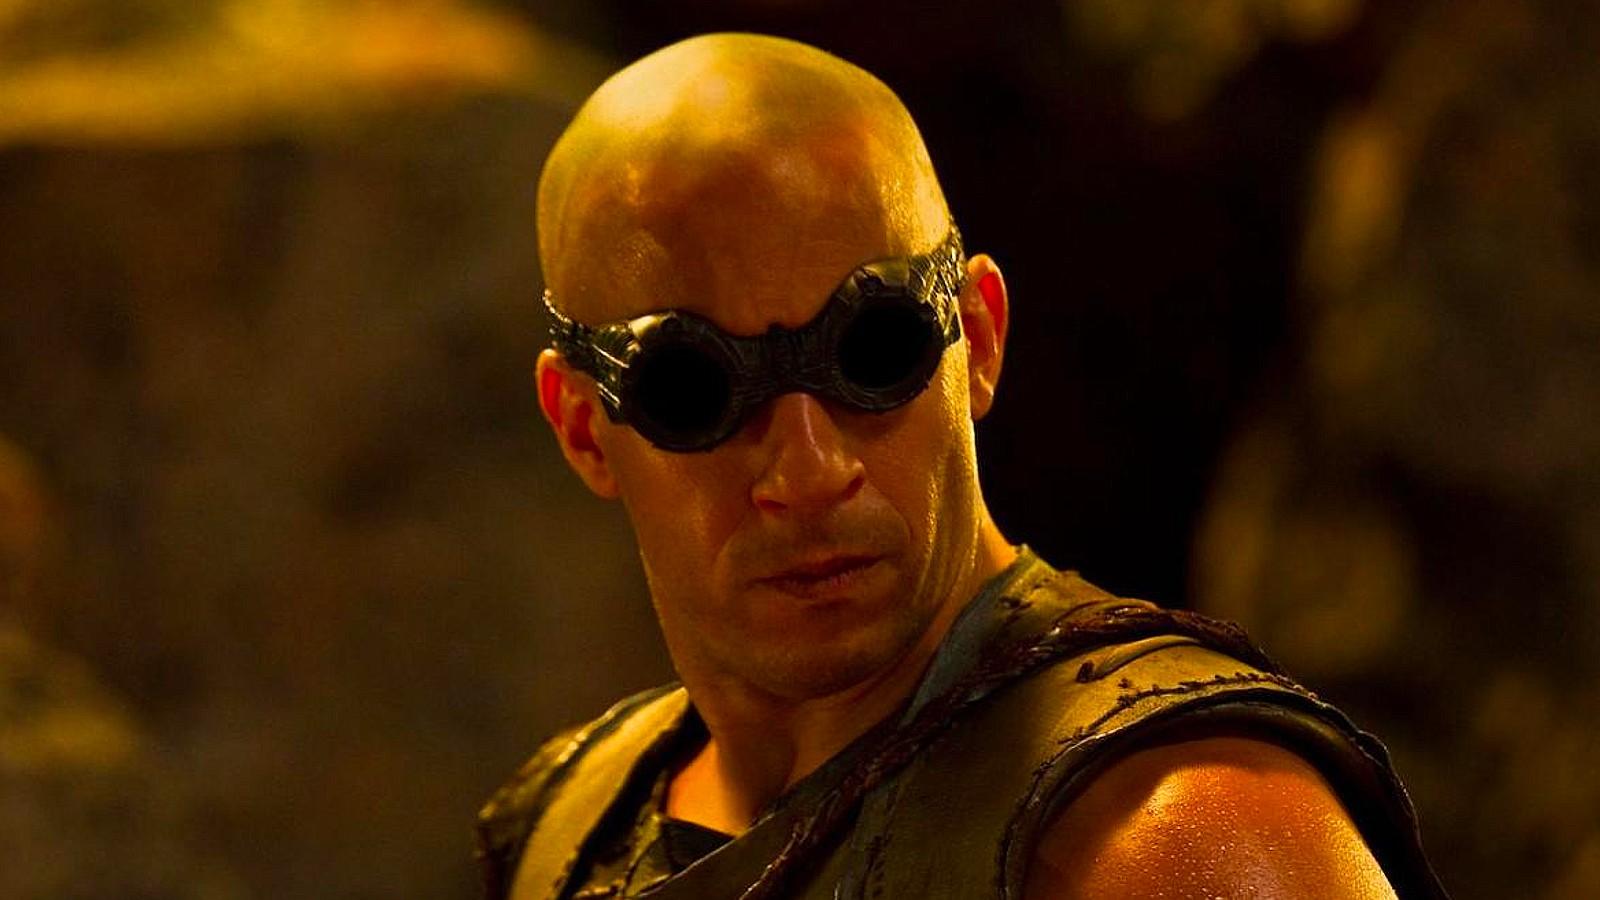 Vin Diesel as Riddick in the Riddick movies